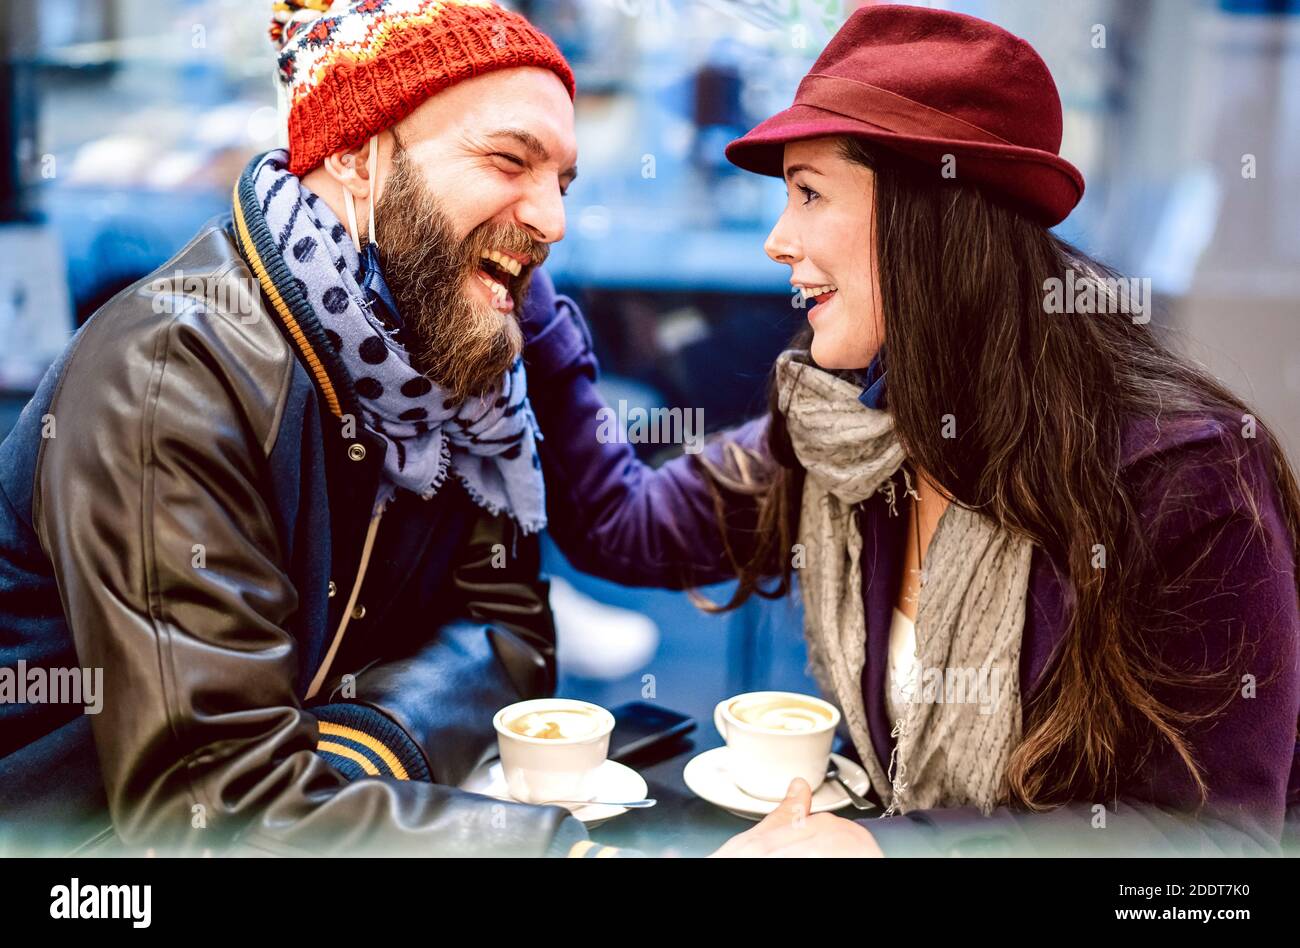 Fröhliche Leute reden und Spaß haben zusammen in der Bar Cafeteria - Winter Lifestyle Konzept mit jungen Paar auf echte Stimmung Italienischen Kaffee trinken Stockfoto